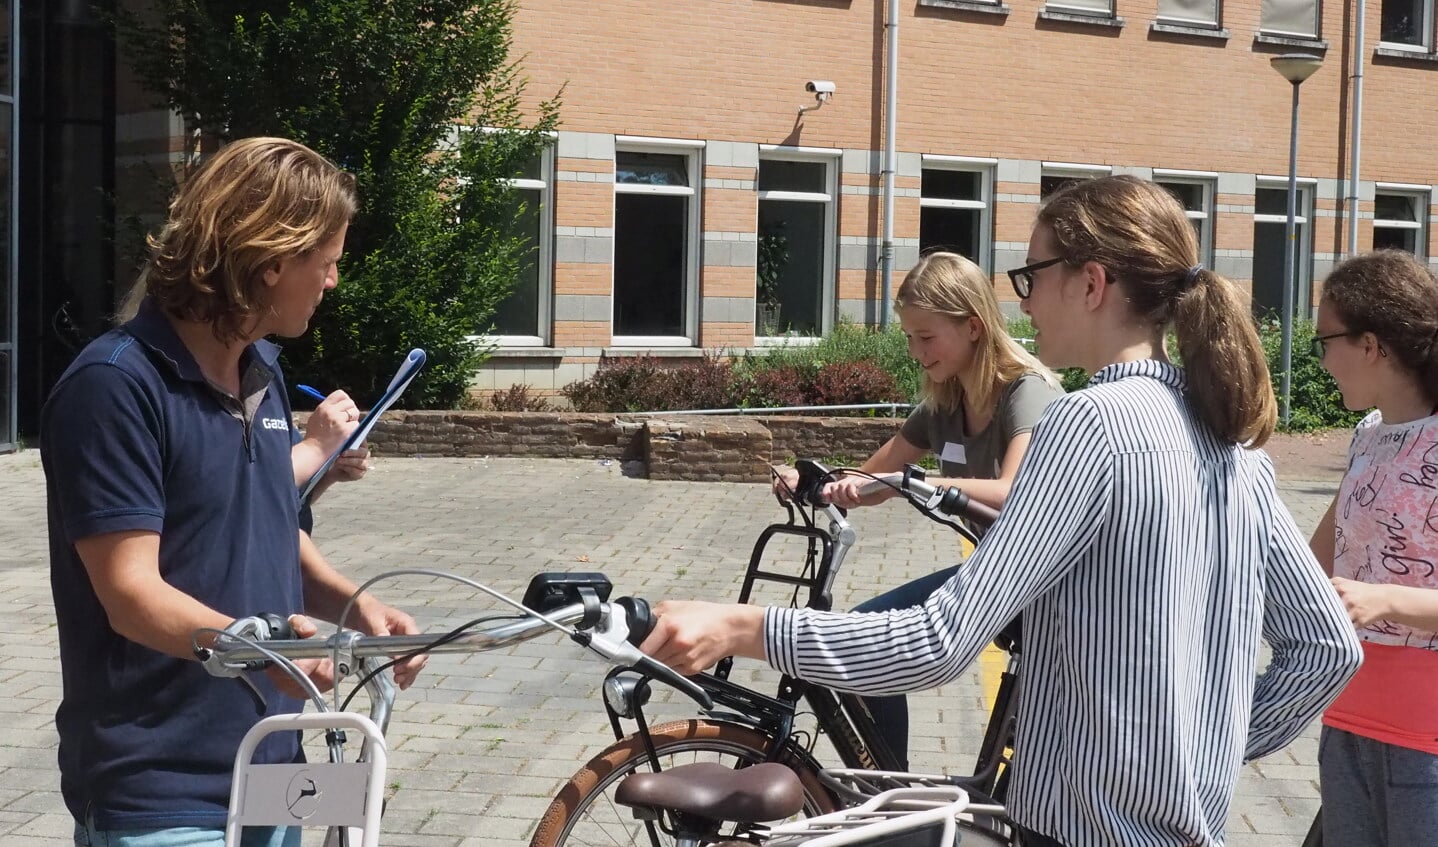 De medewerkers van Gazelle hadden ook enkele fietsen meegebracht, die de leerlingen mochten uitproberen. Foto: PR